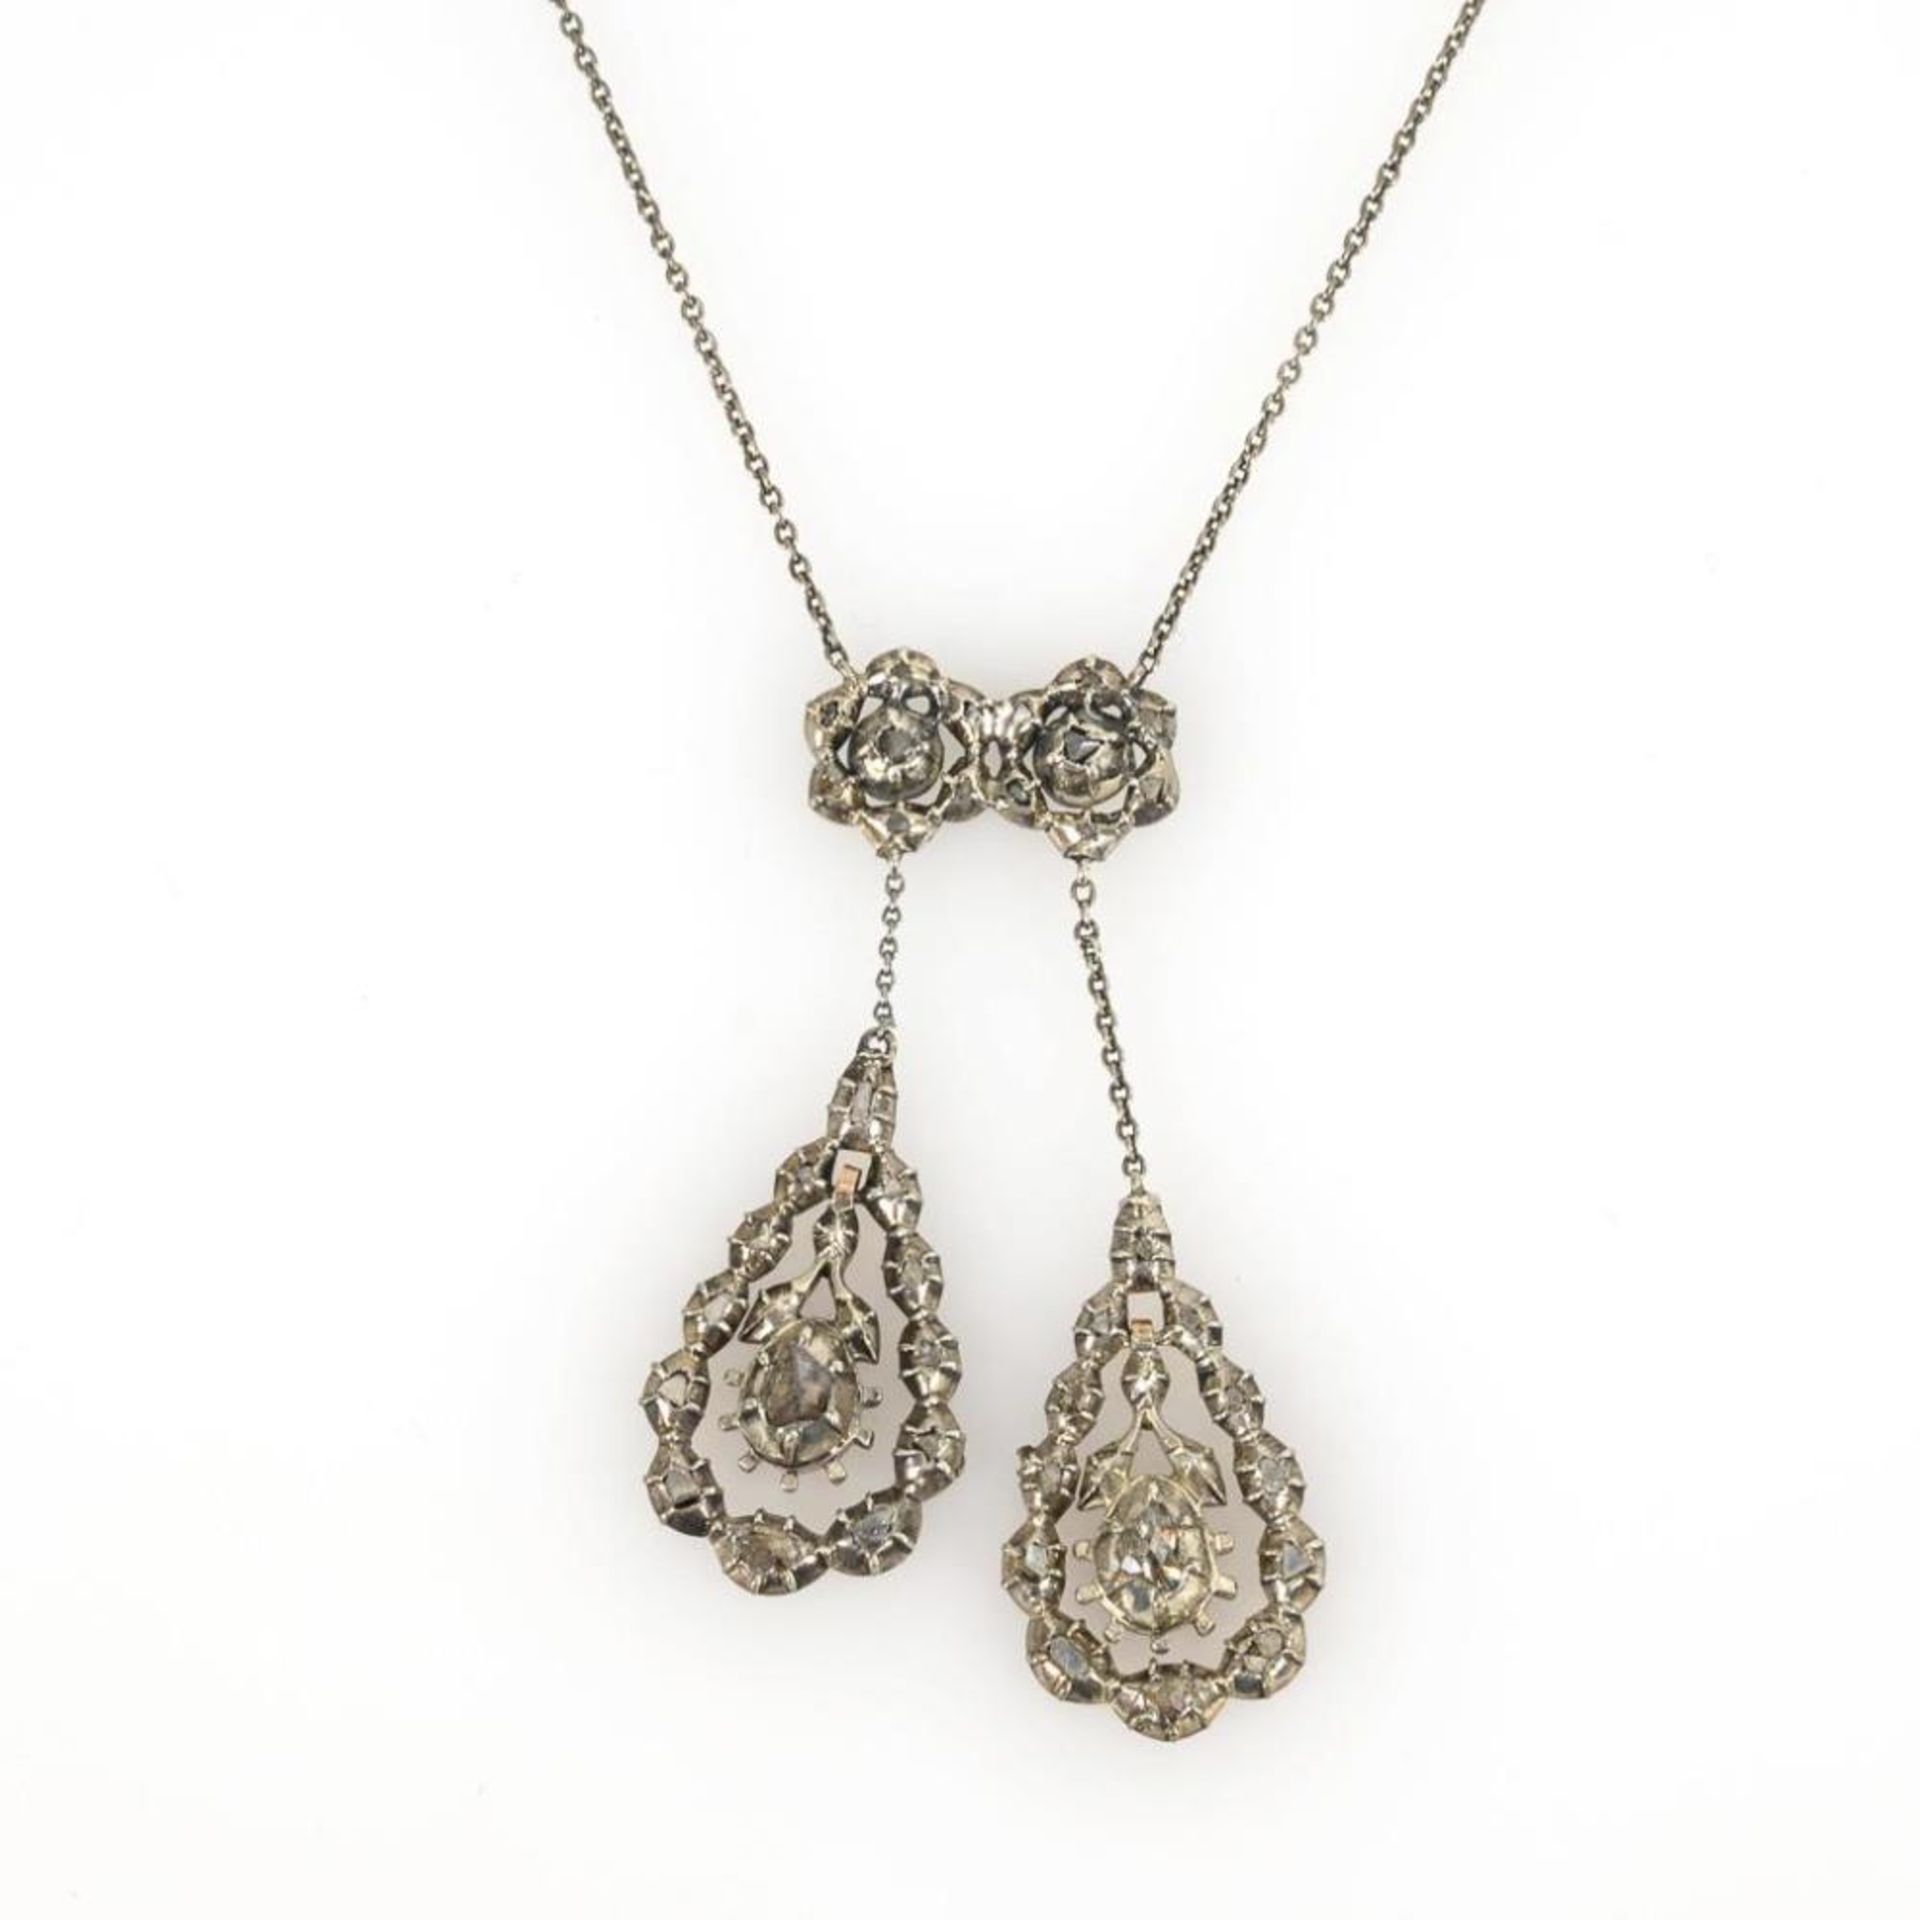 Collier aus antiken Ohrhängern mit Altschliff-Diamanten. - Bild 2 aus 2